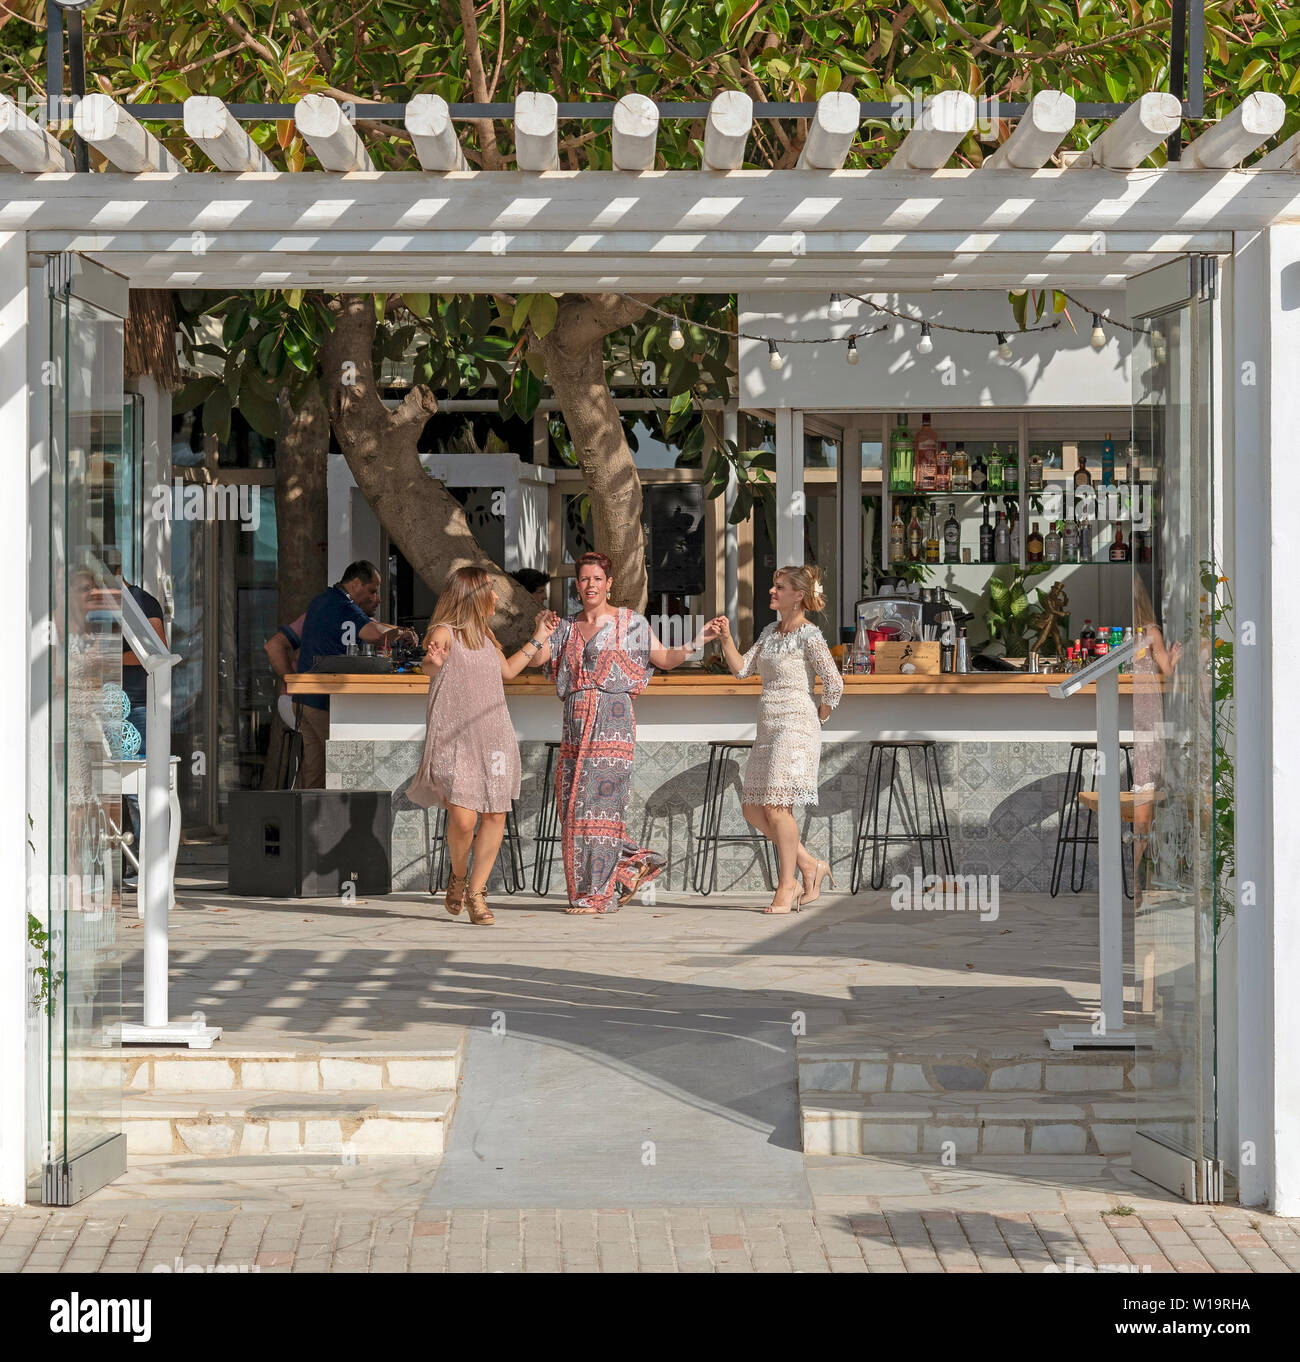 Chania, Kreta, Griechenland. Juni 2019. Kunden tanzen rund um die Bar von einem griechischen Restaurant in der Gegend von Chania auf Kreta. Stockfoto